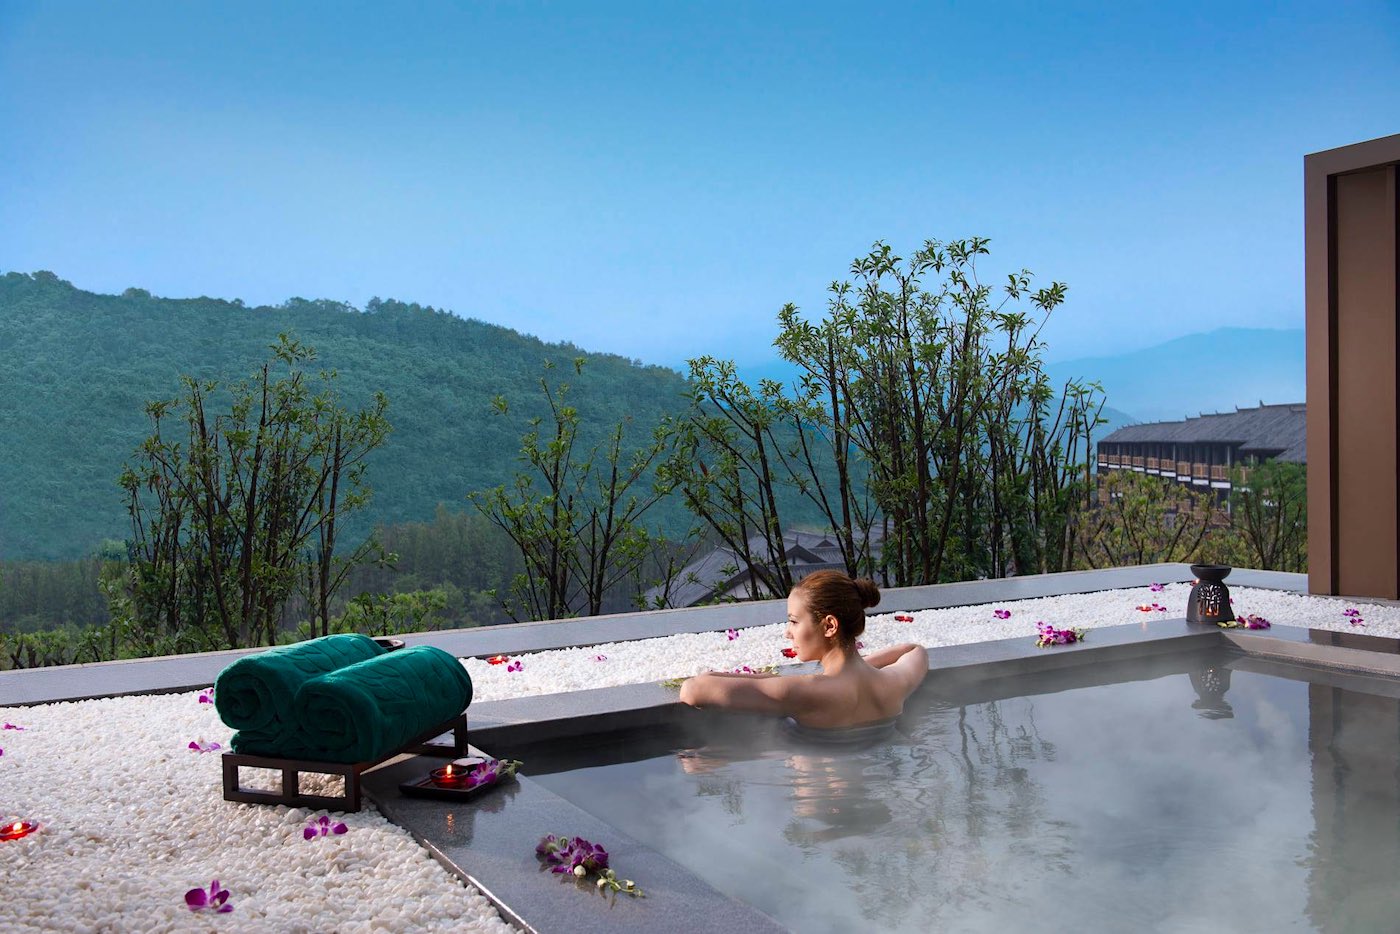 Banyan Tree Hotels ofrece descuentos asombrosos de hasta el 78% en sus alojamientos de lujo en toda Asia